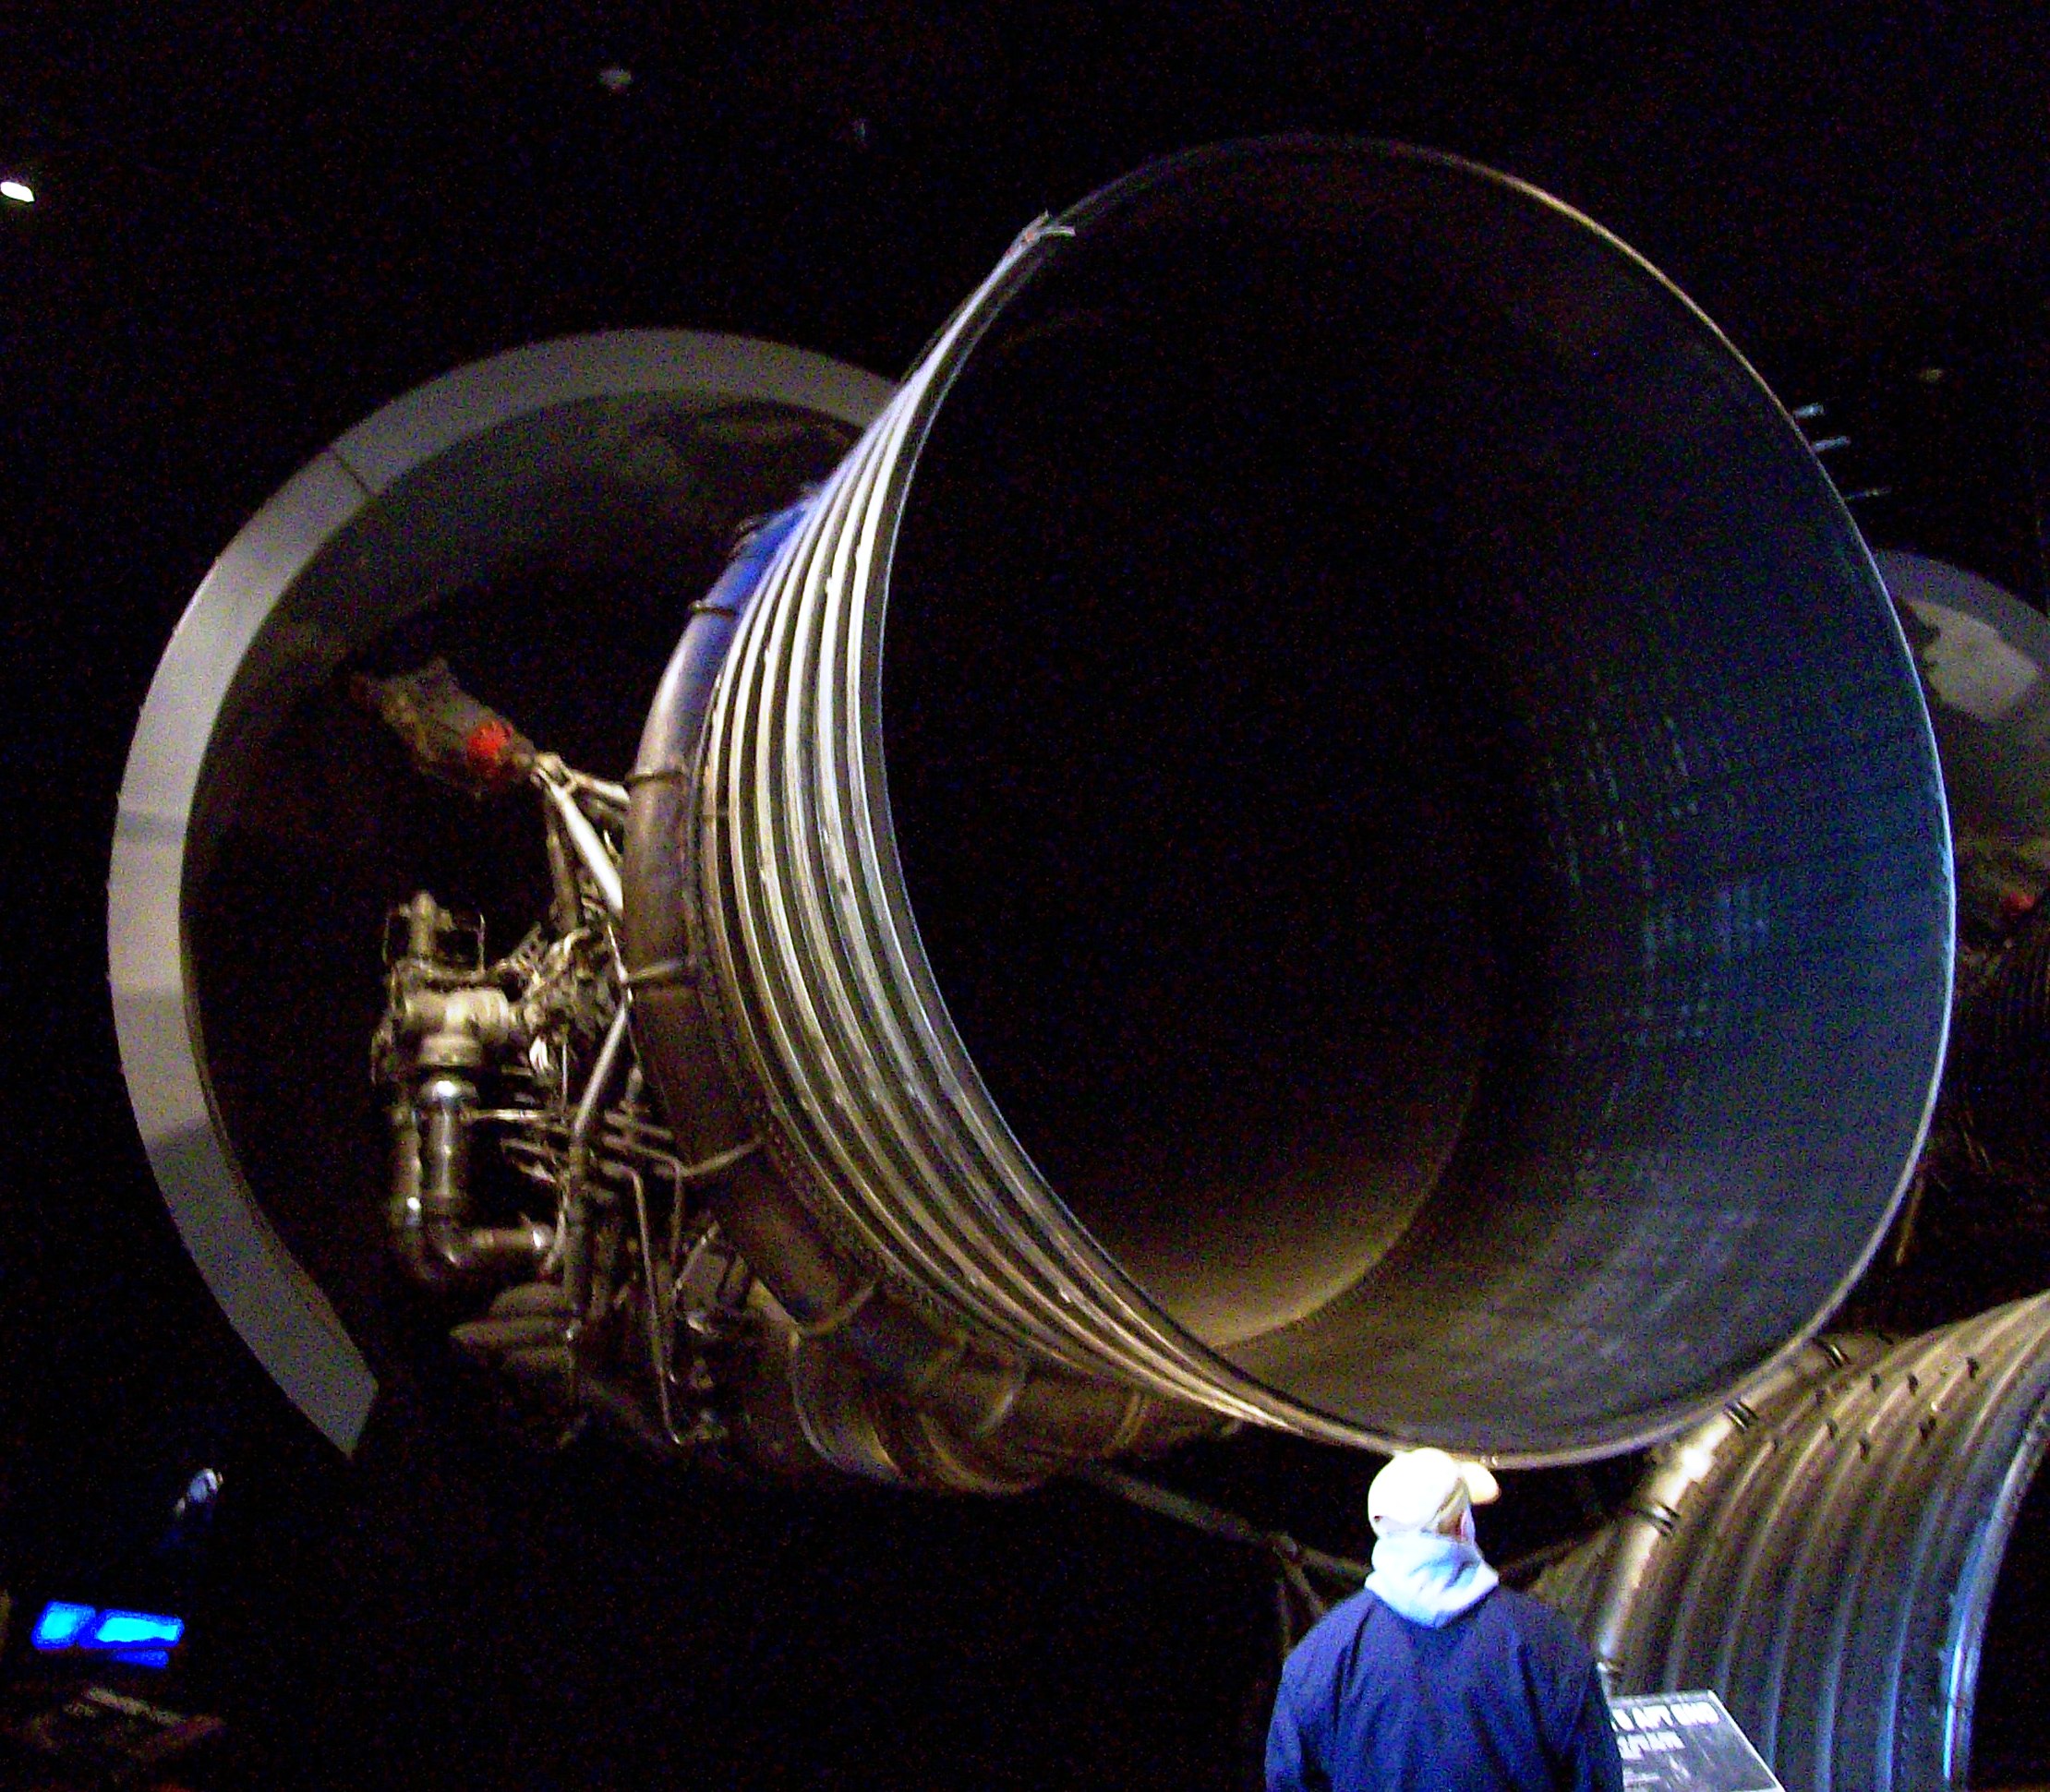 Сопло одного из 5 двигателей первой ступени ракеты Сатурн-5 (тяга одного двигателя - около 700 тонн, диаметр сопла более 3 м)